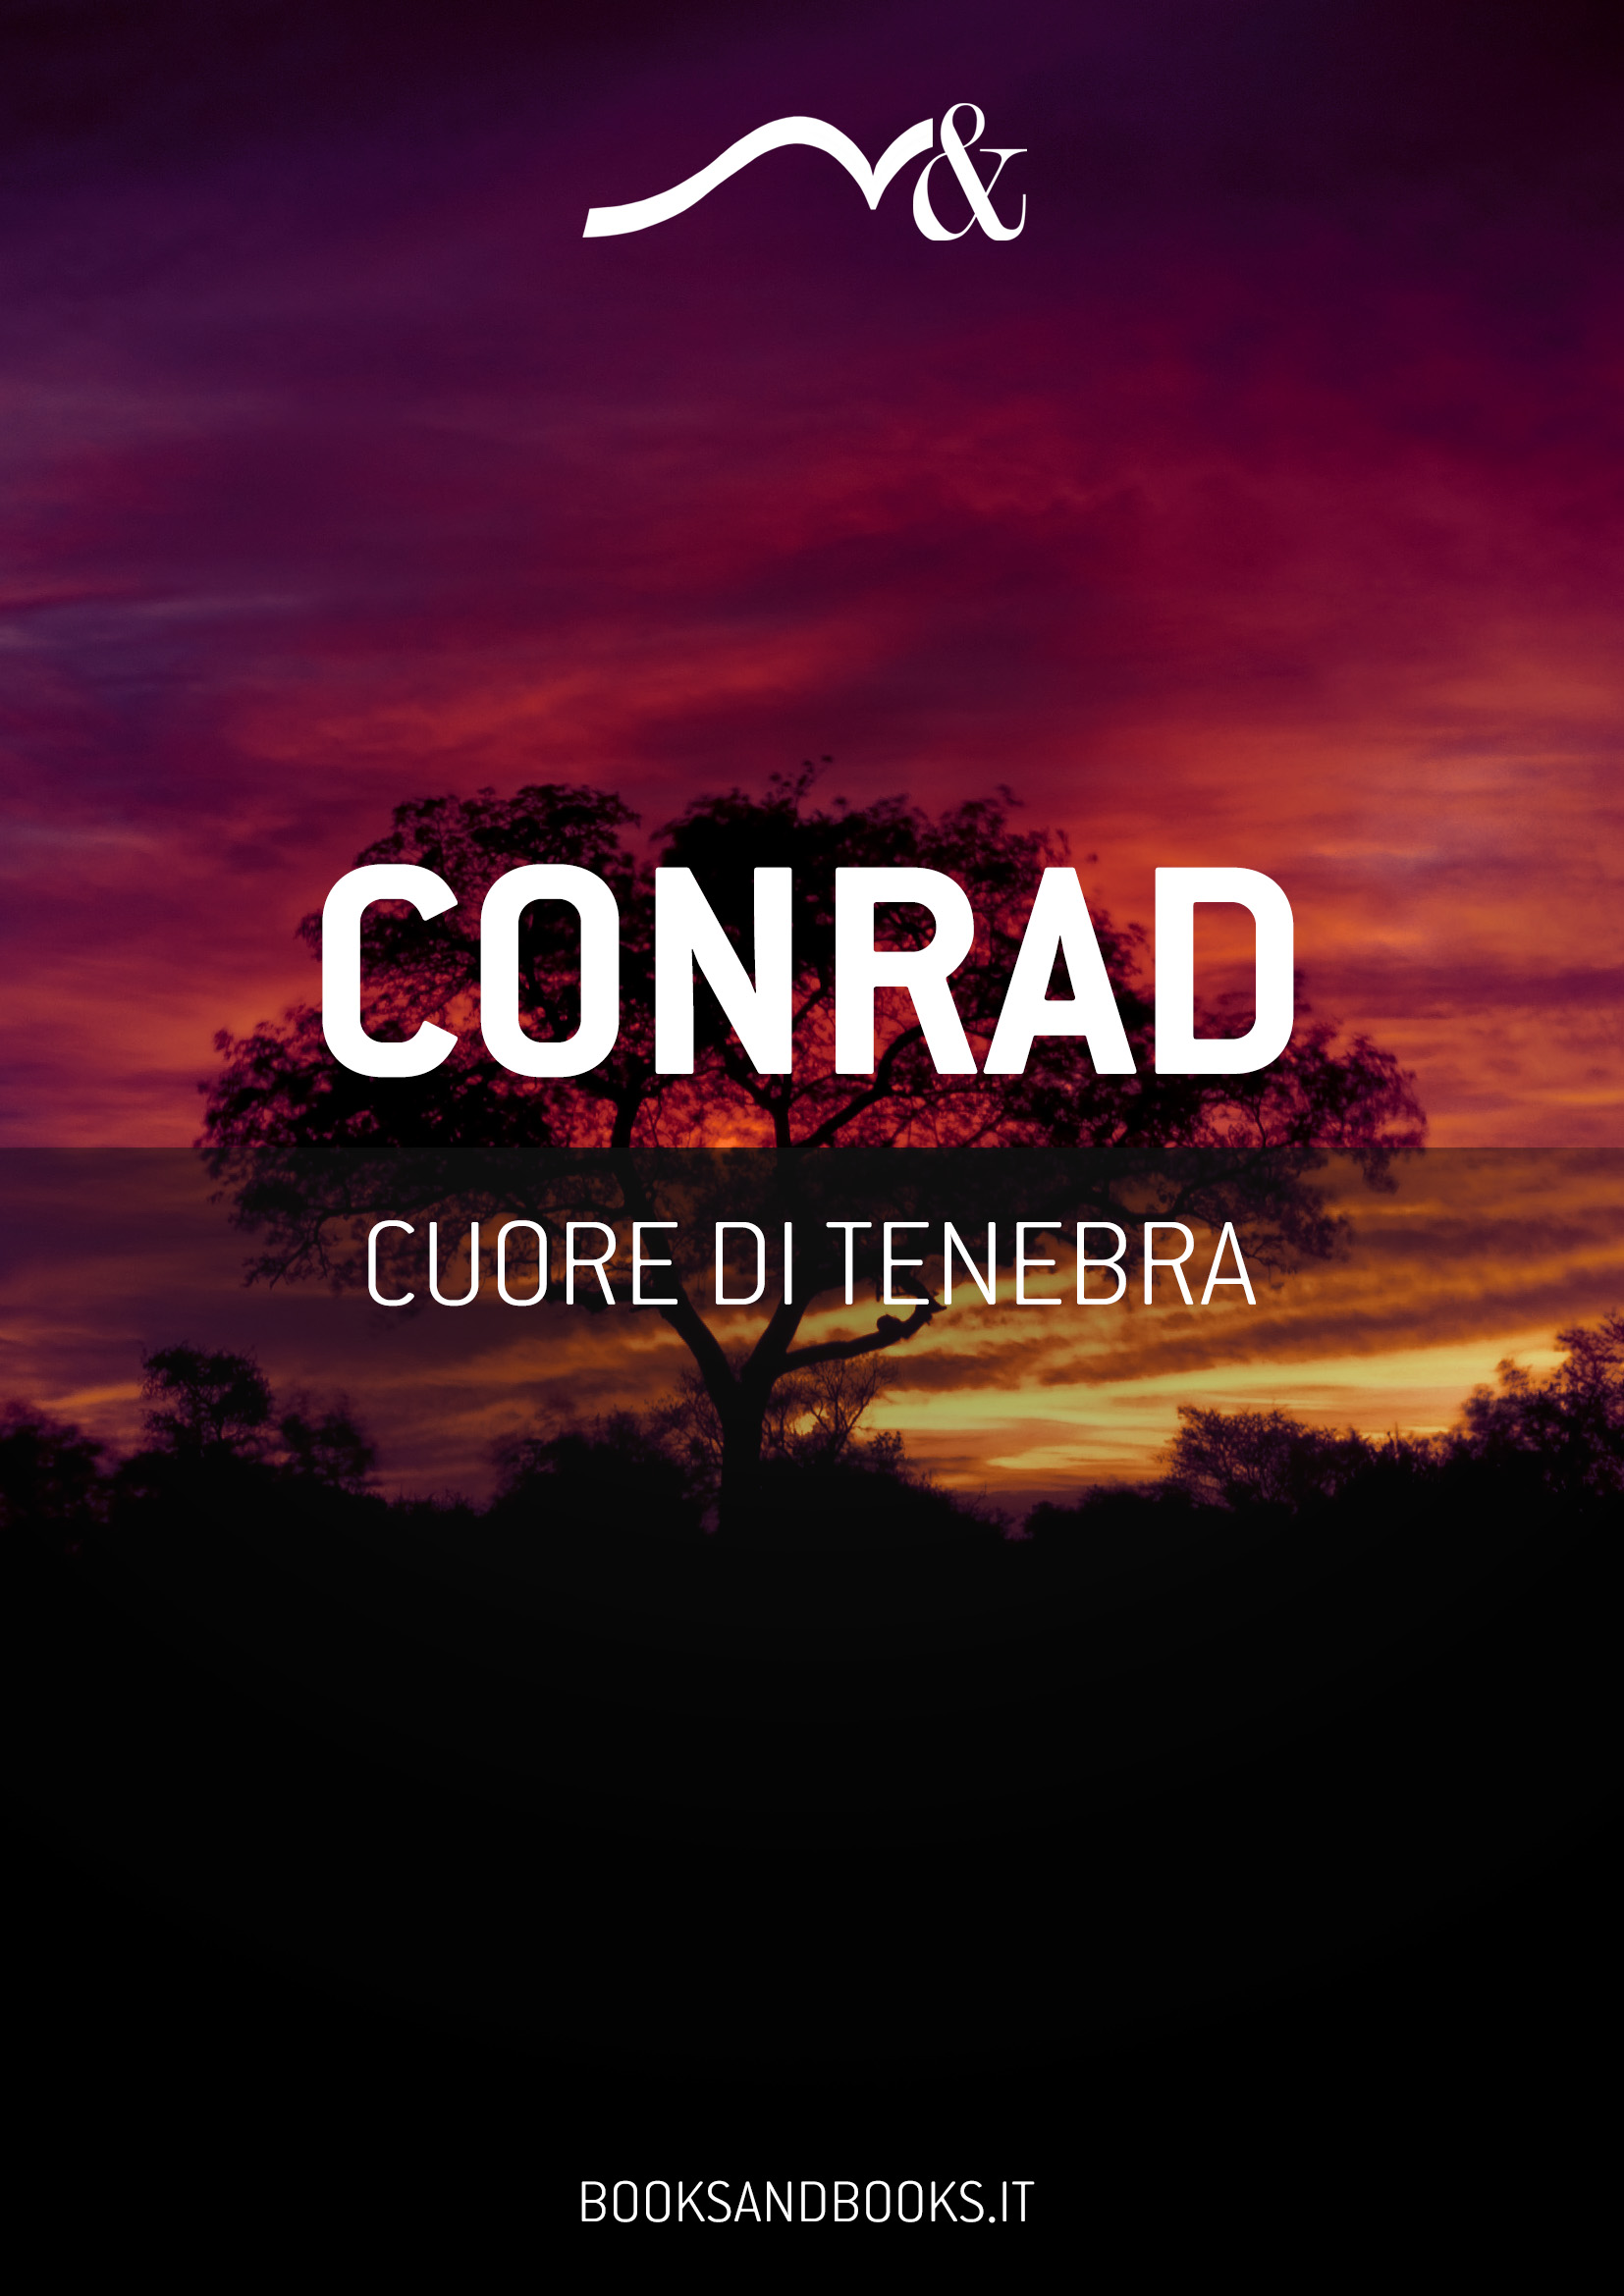 Cuore di tenebra - Joseph Conrad - Mondolibri - 0 - flexible_cover